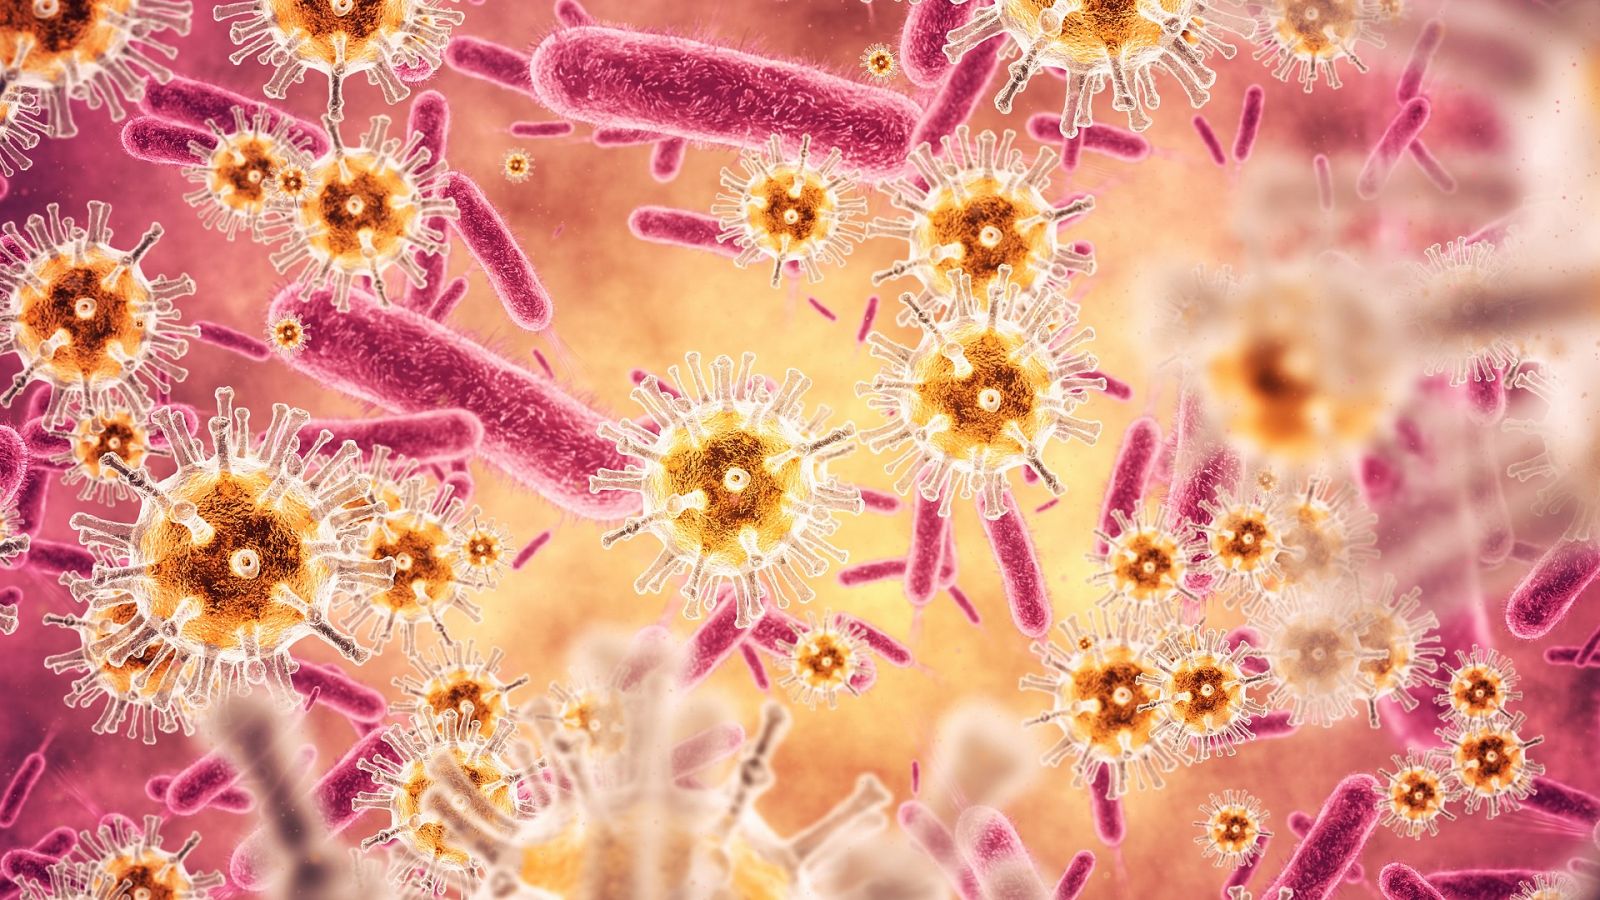 ¿Están aumentado las infecciones virales o sólo las detectamos más que antes?